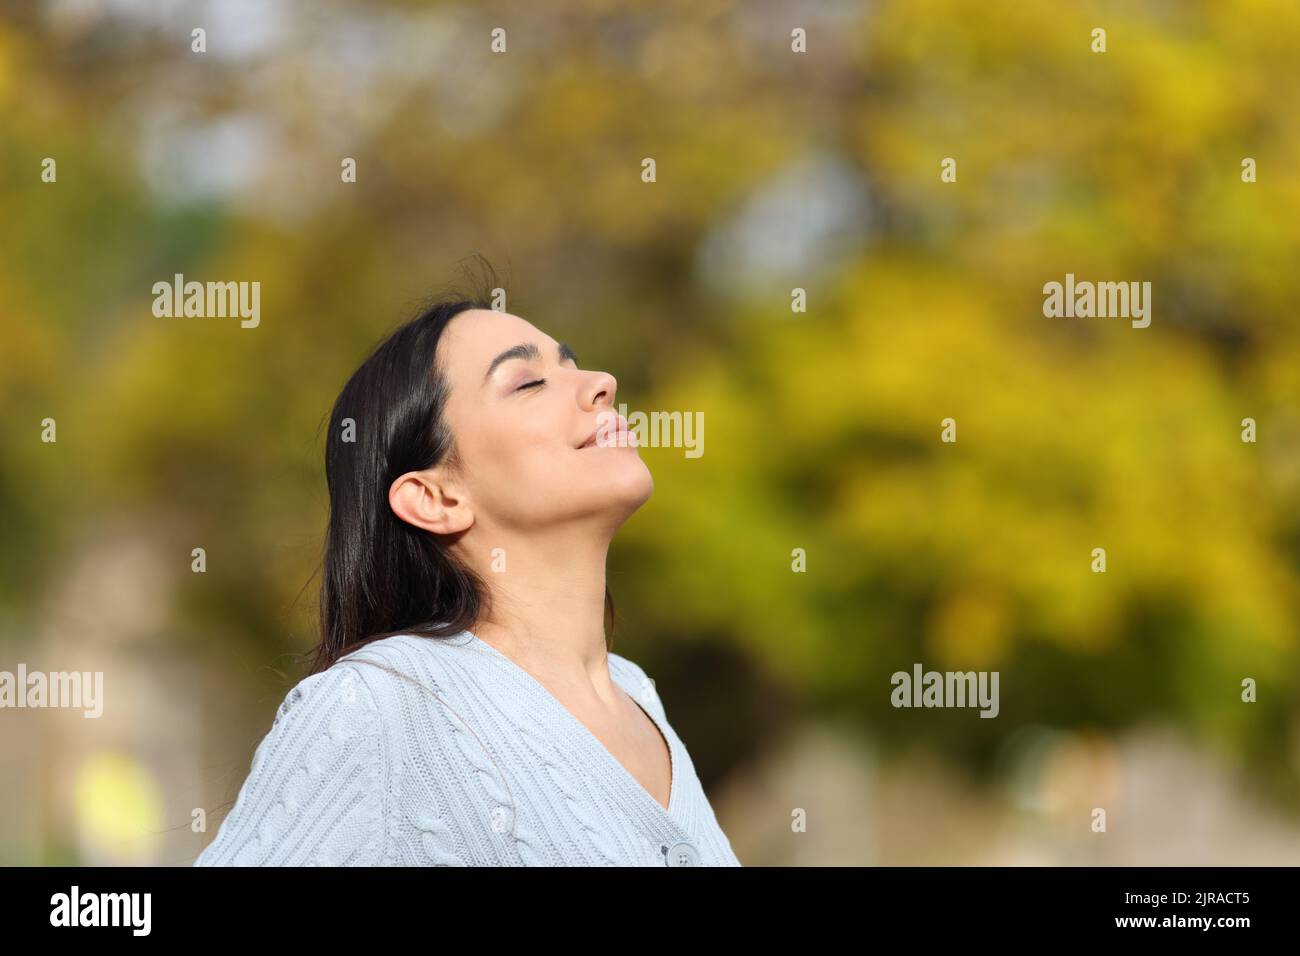 Une femme heureuse se détend en respirant l'air frais d'un parc Banque D'Images